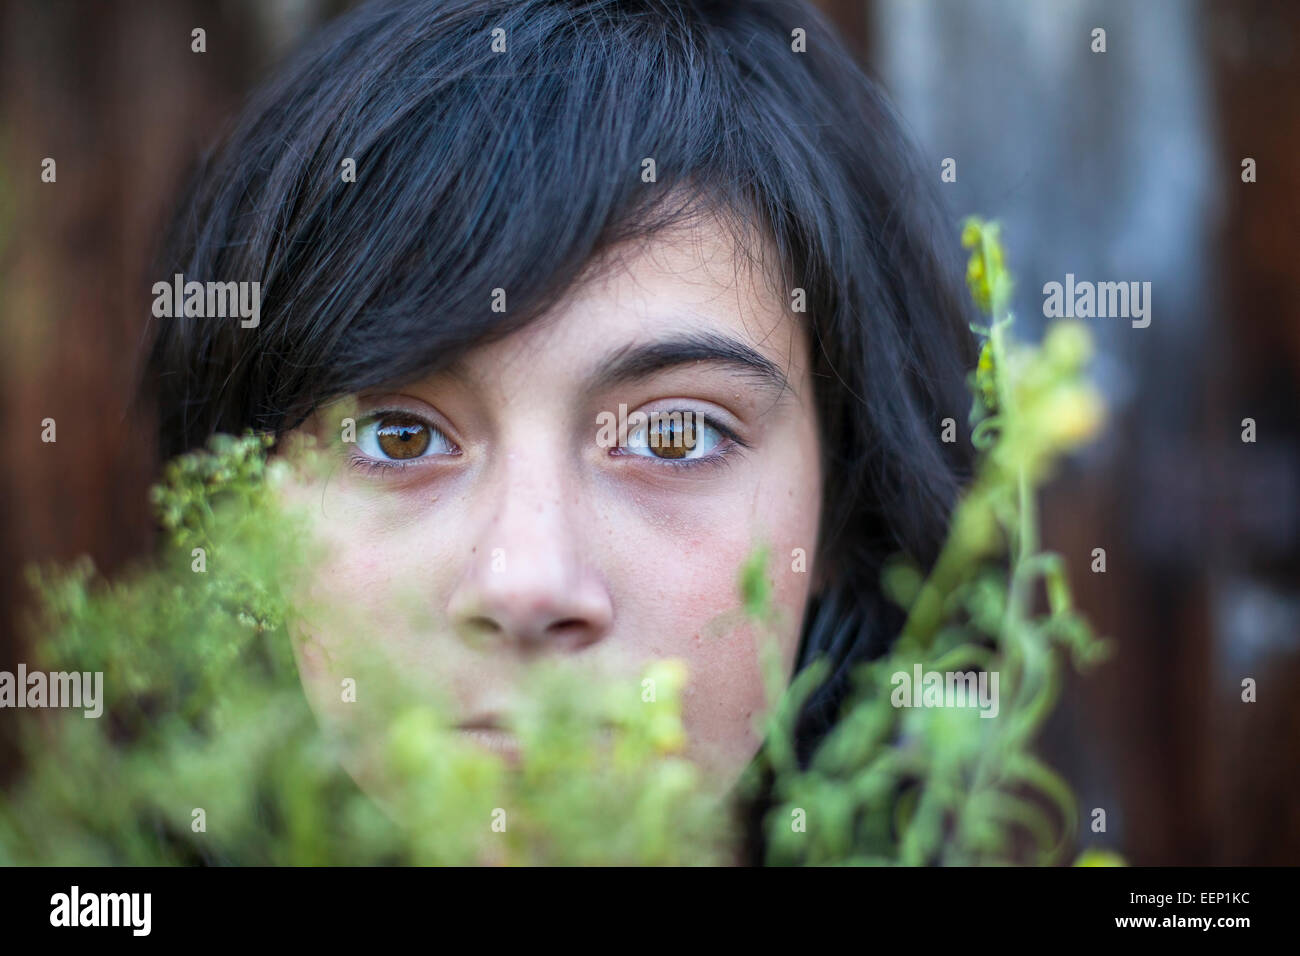 Nahaufnahme der schwarzhaarige Teengirl mit ausdrucksvollen Augen, versteckt im Grün des Gartens. EMO. Stockfoto